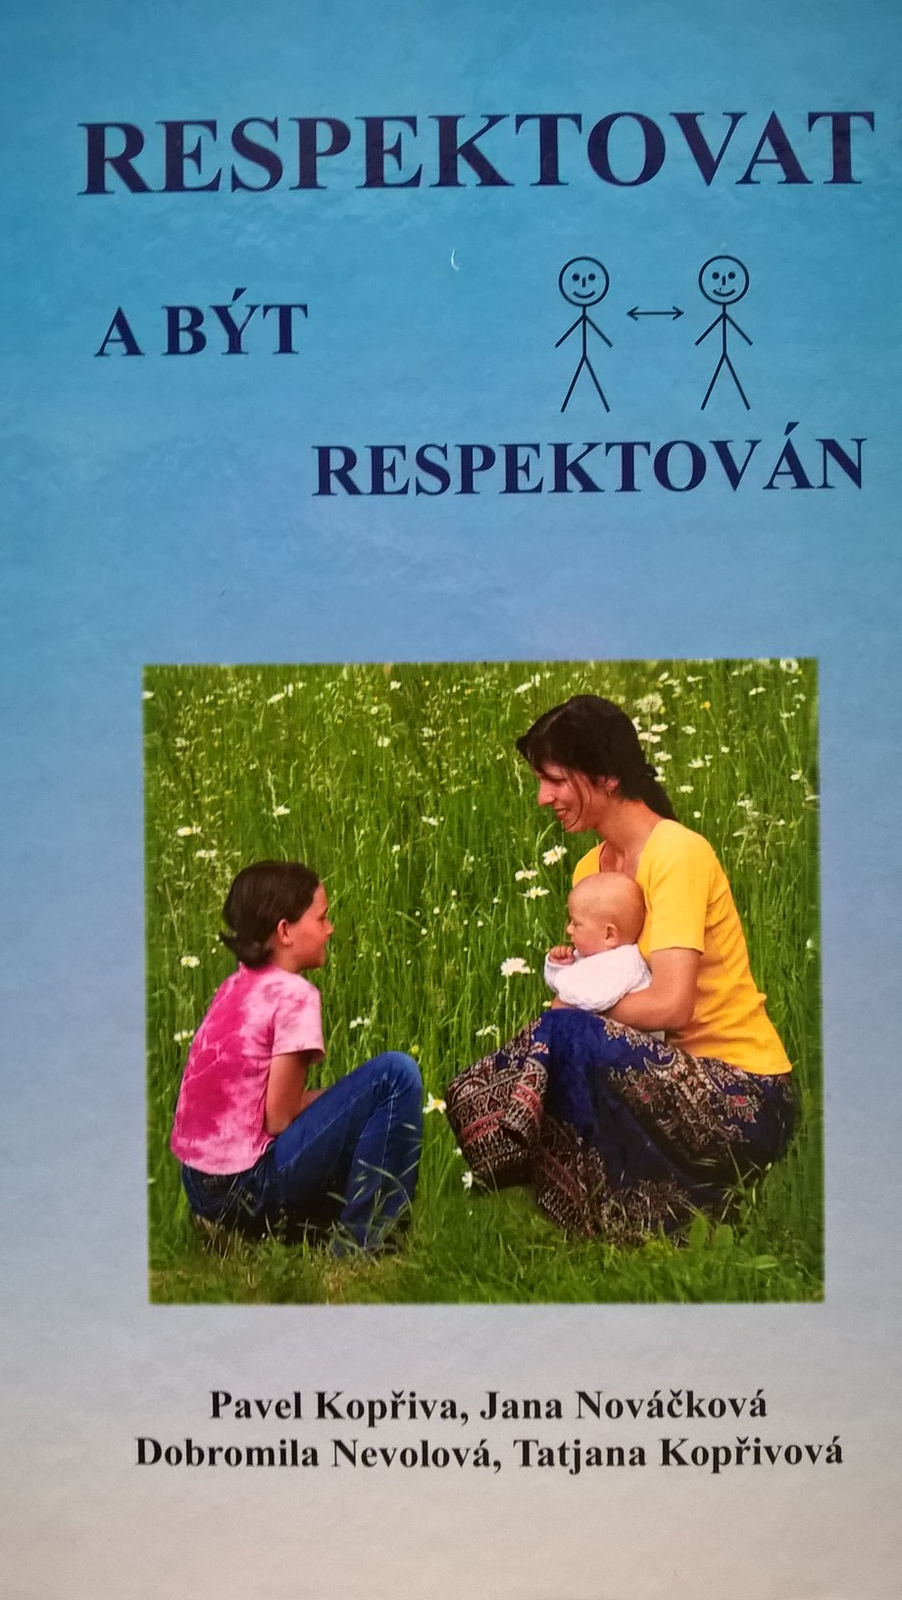 Respektovat a být  respektován : P. Kopřiva, J. Nováčková, D. Nevolová, T. Kopřivová